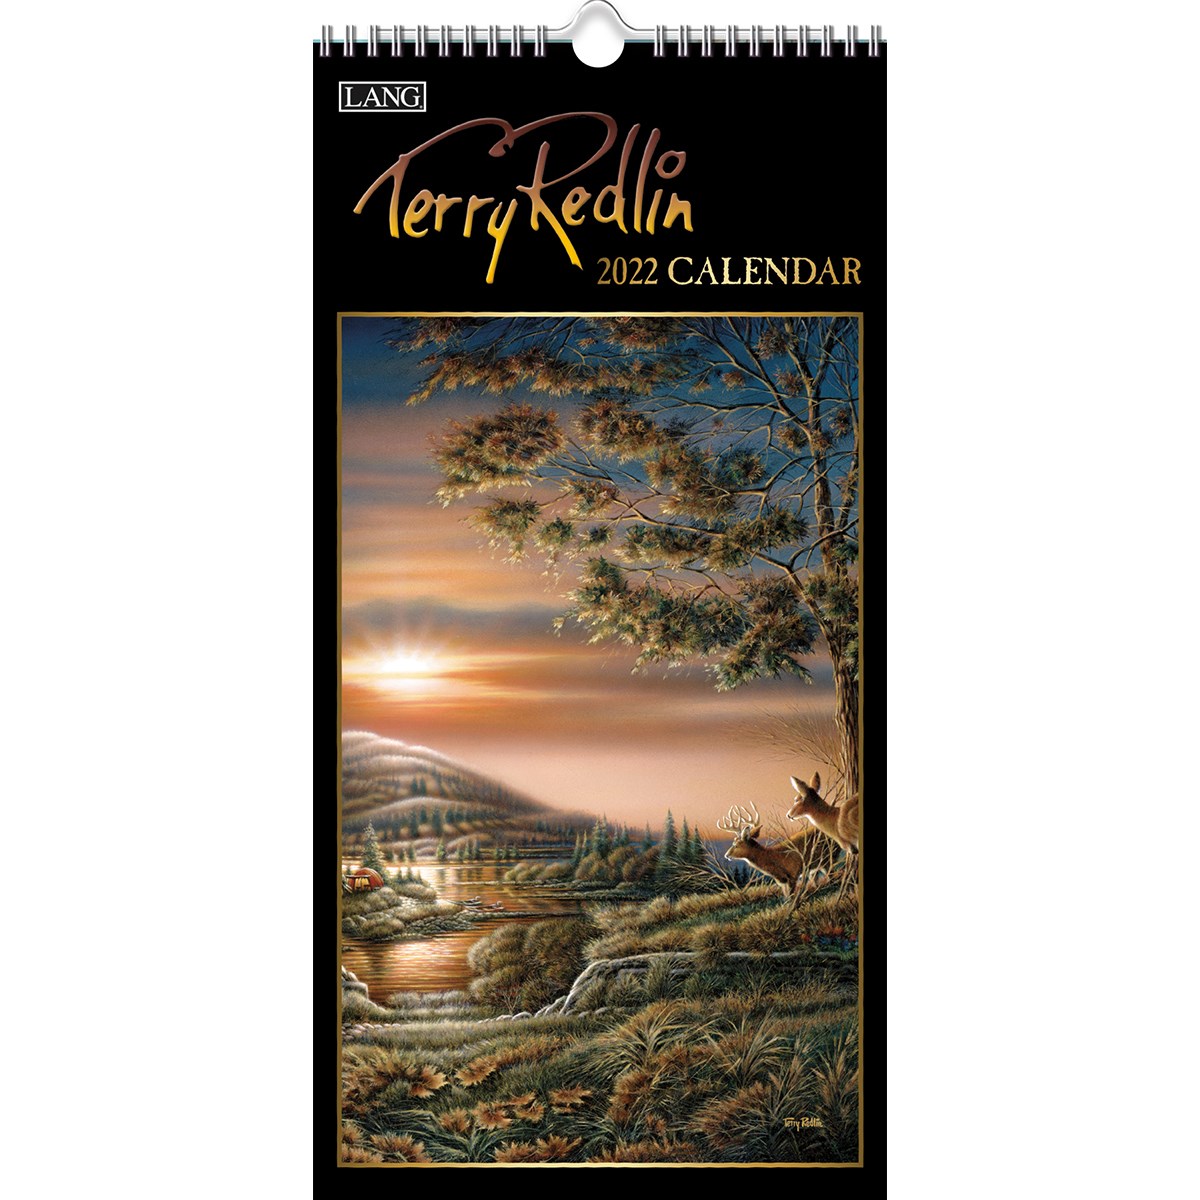 vrtwcal-terry-redlin-vertical-wall-calendar-bella-flor